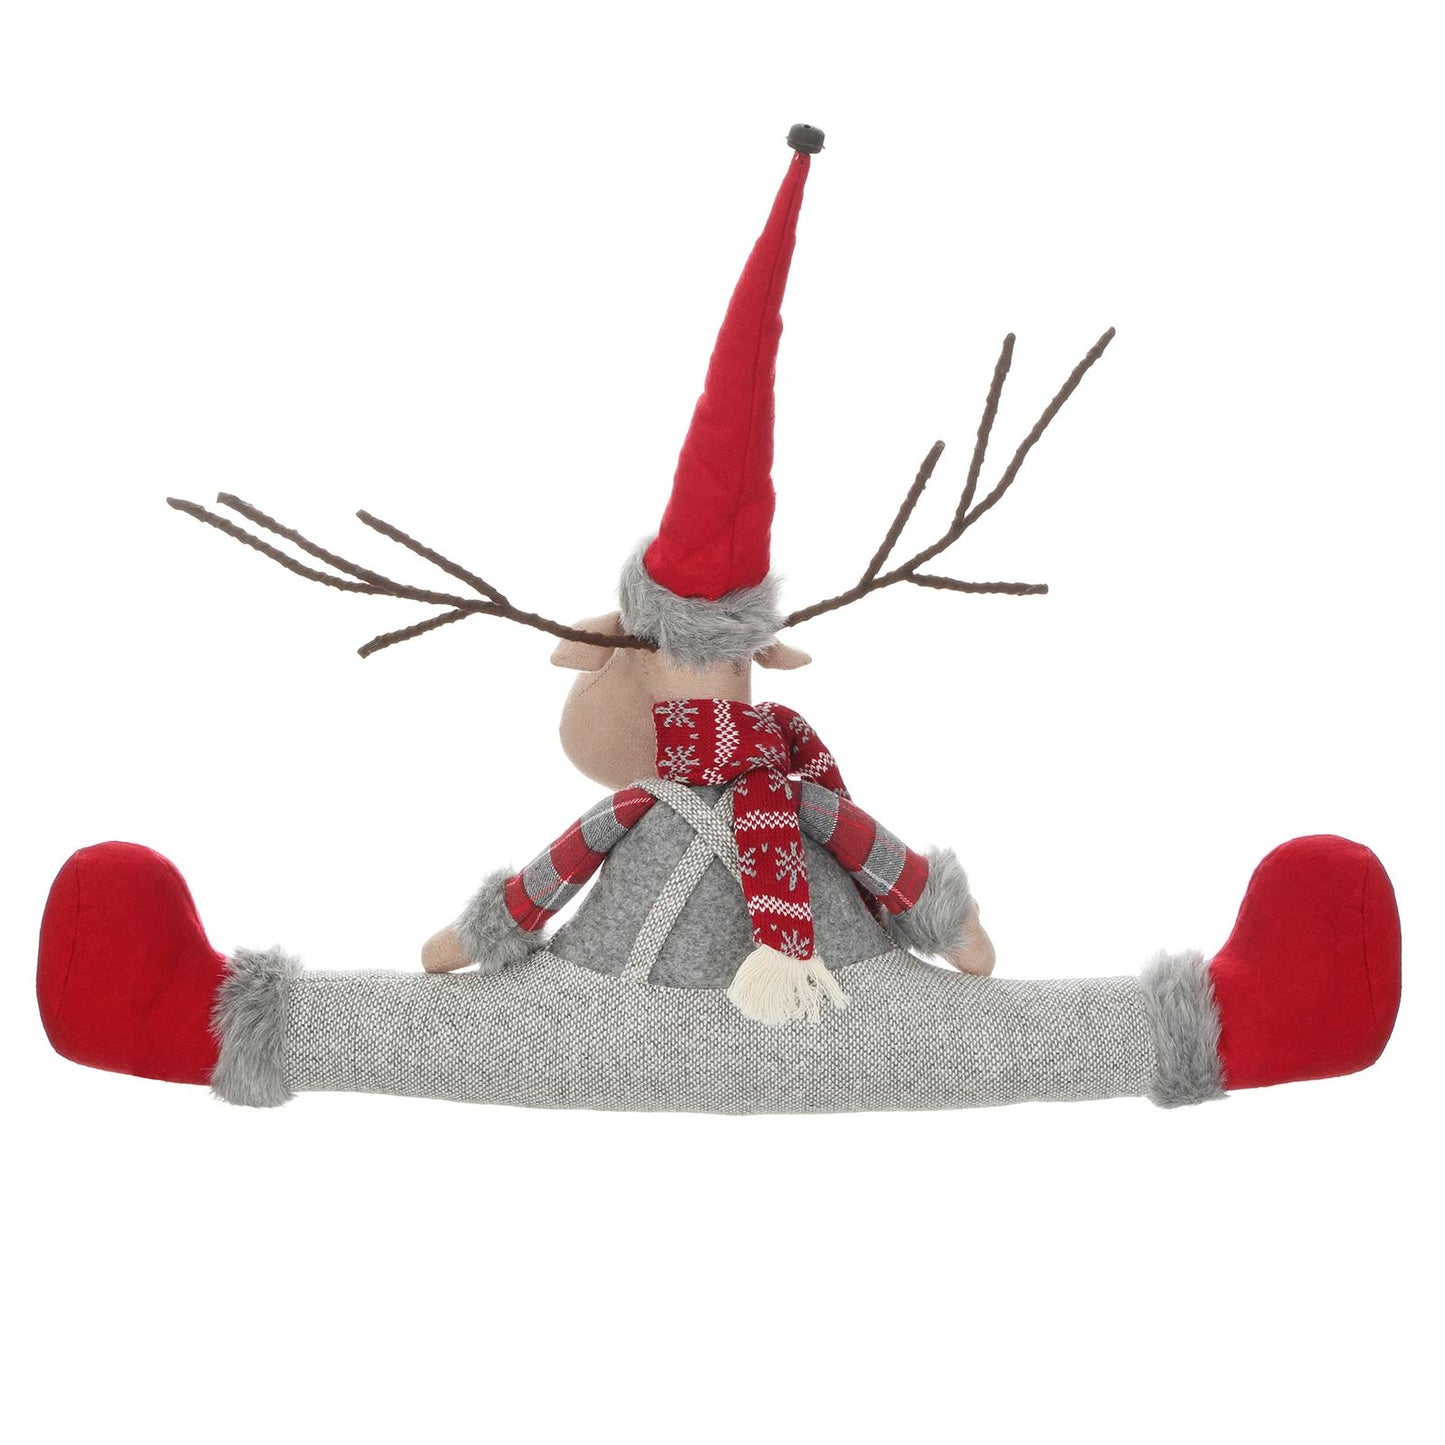 Mr Crimbo Novelty Plush Character Christmas Draught Excluder - MrCrimbo.co.uk -XS5731 - Reindeer -christmas decorations